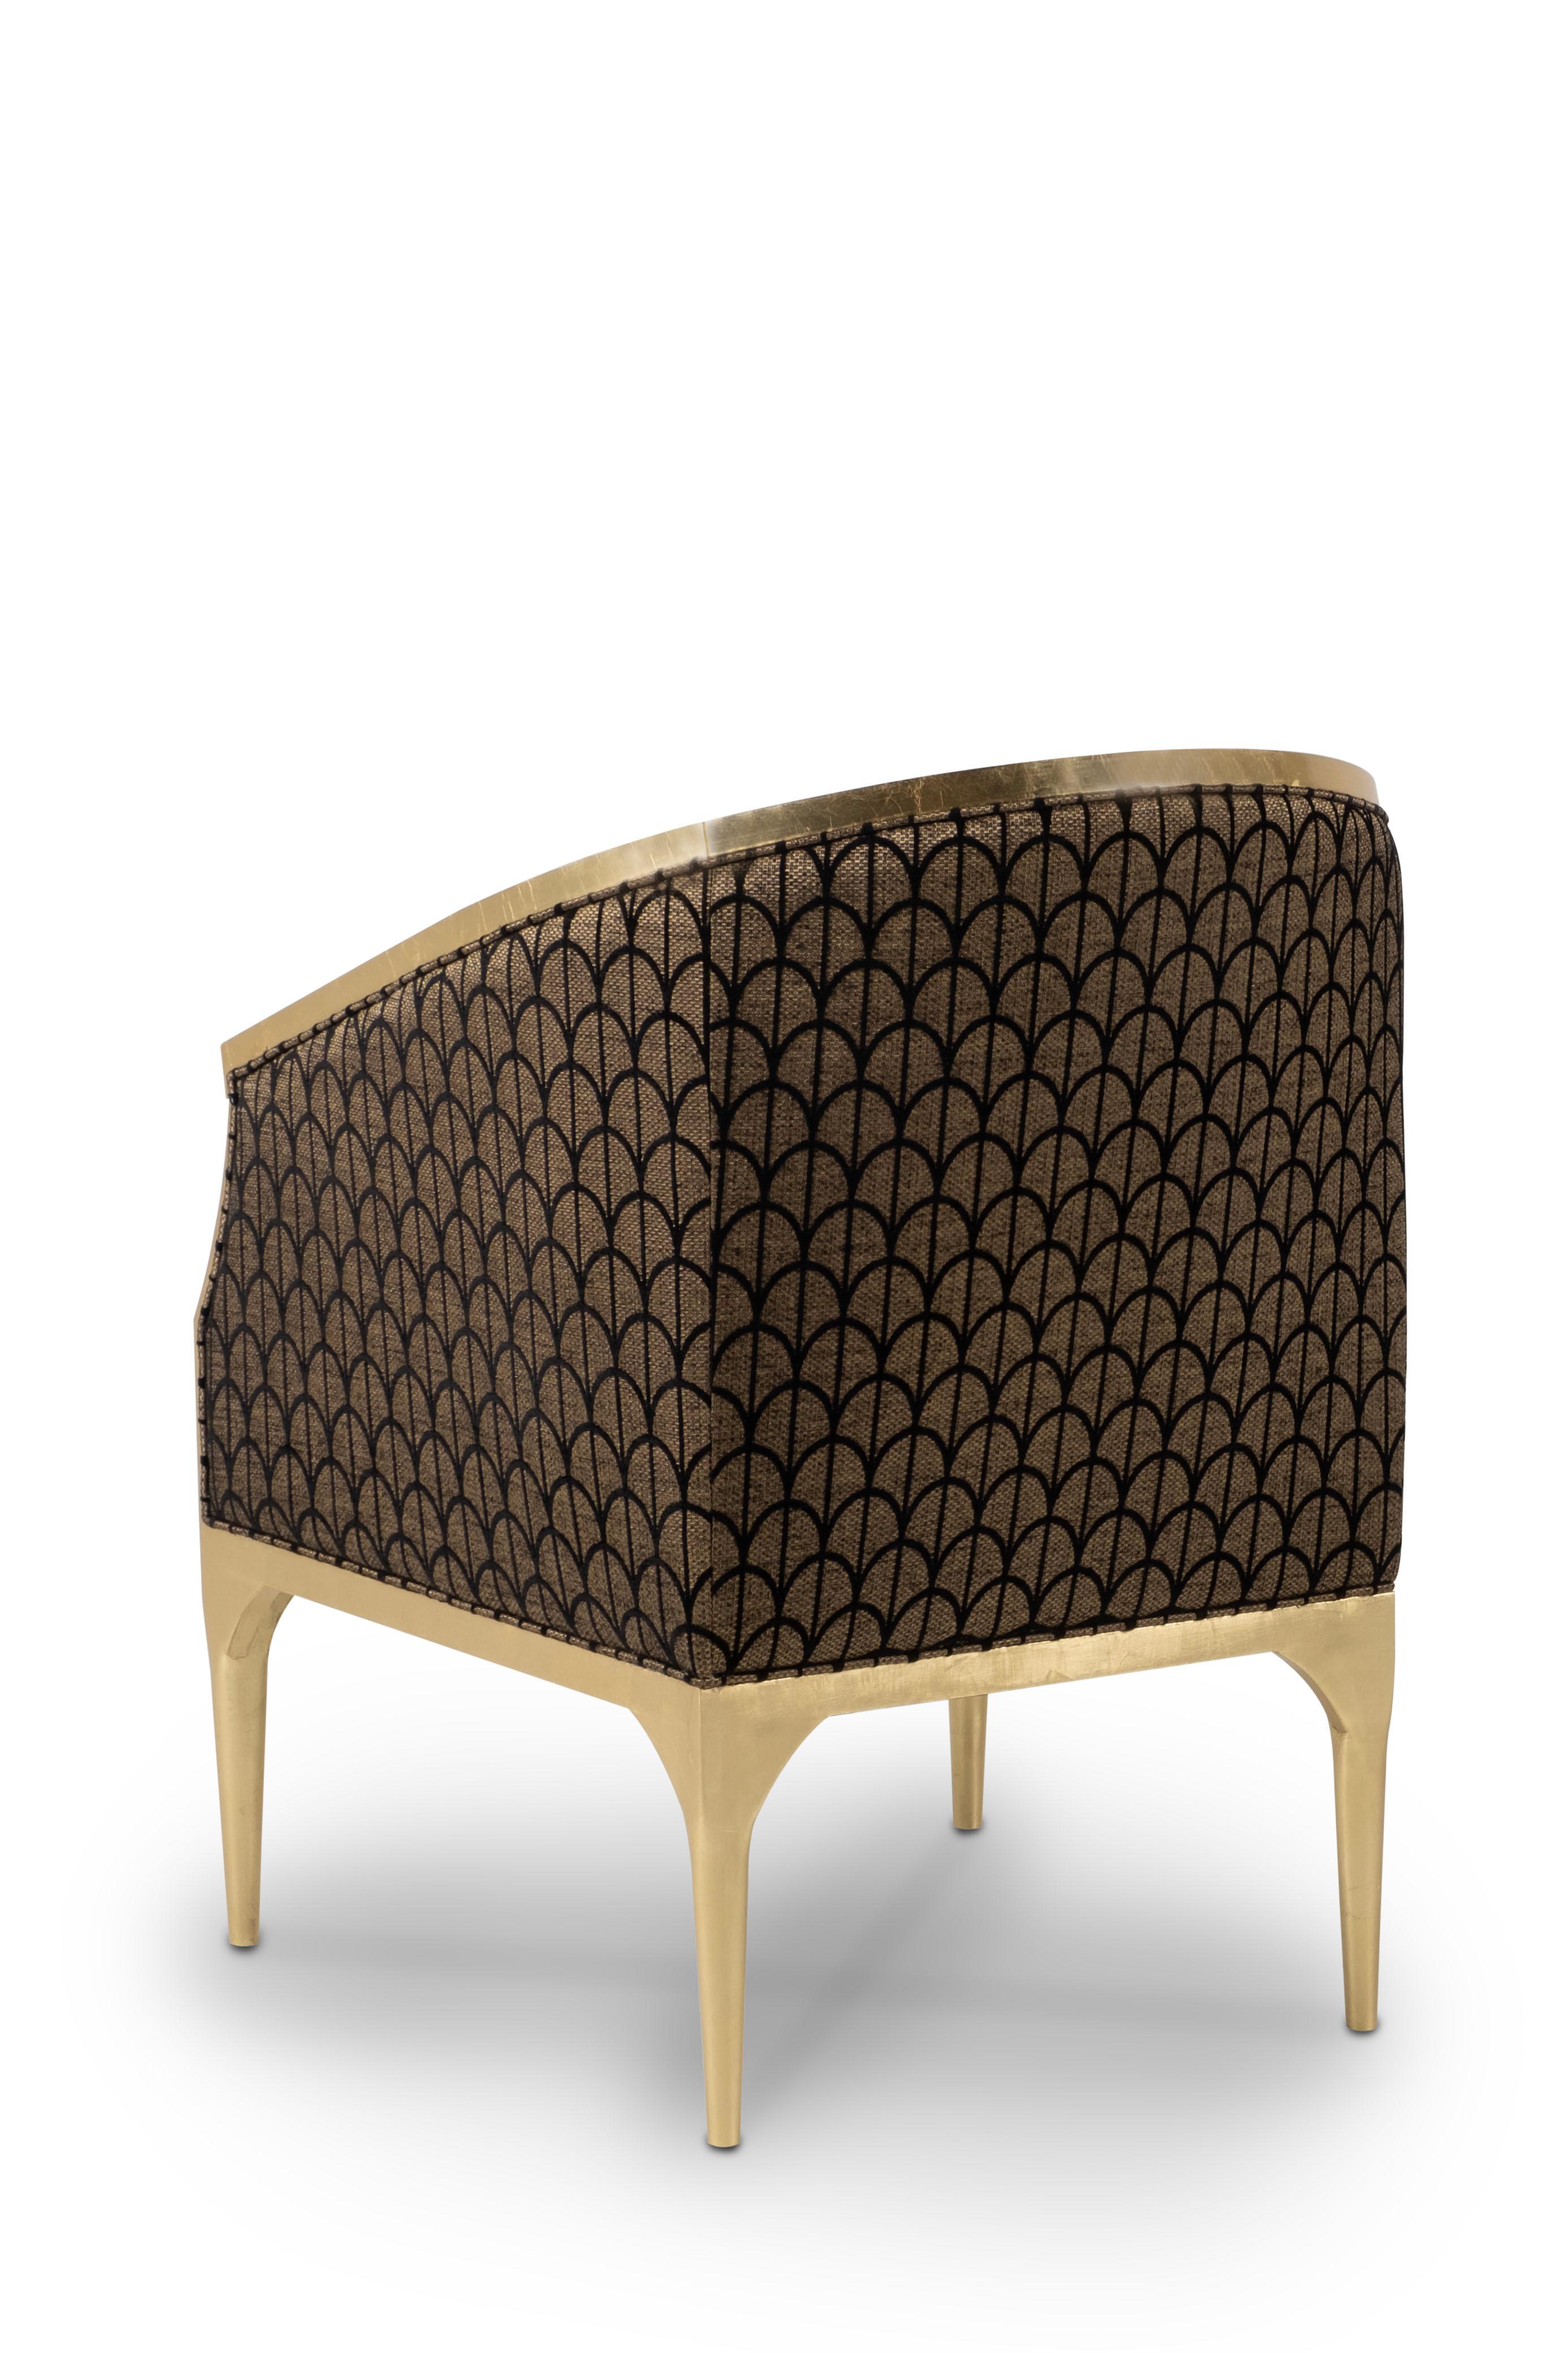 Sessel Paris, Kollektion Modern, handgefertigt in Portugal - Europa von GF Modern.

Der Sessel Paris verleiht jedem Wohnbereich eine raffinierte und elegante Note. Mit dem goldenen Chenille-Stoff Lelièvre und dem schwarzen Jacquard-Stoff Dedar